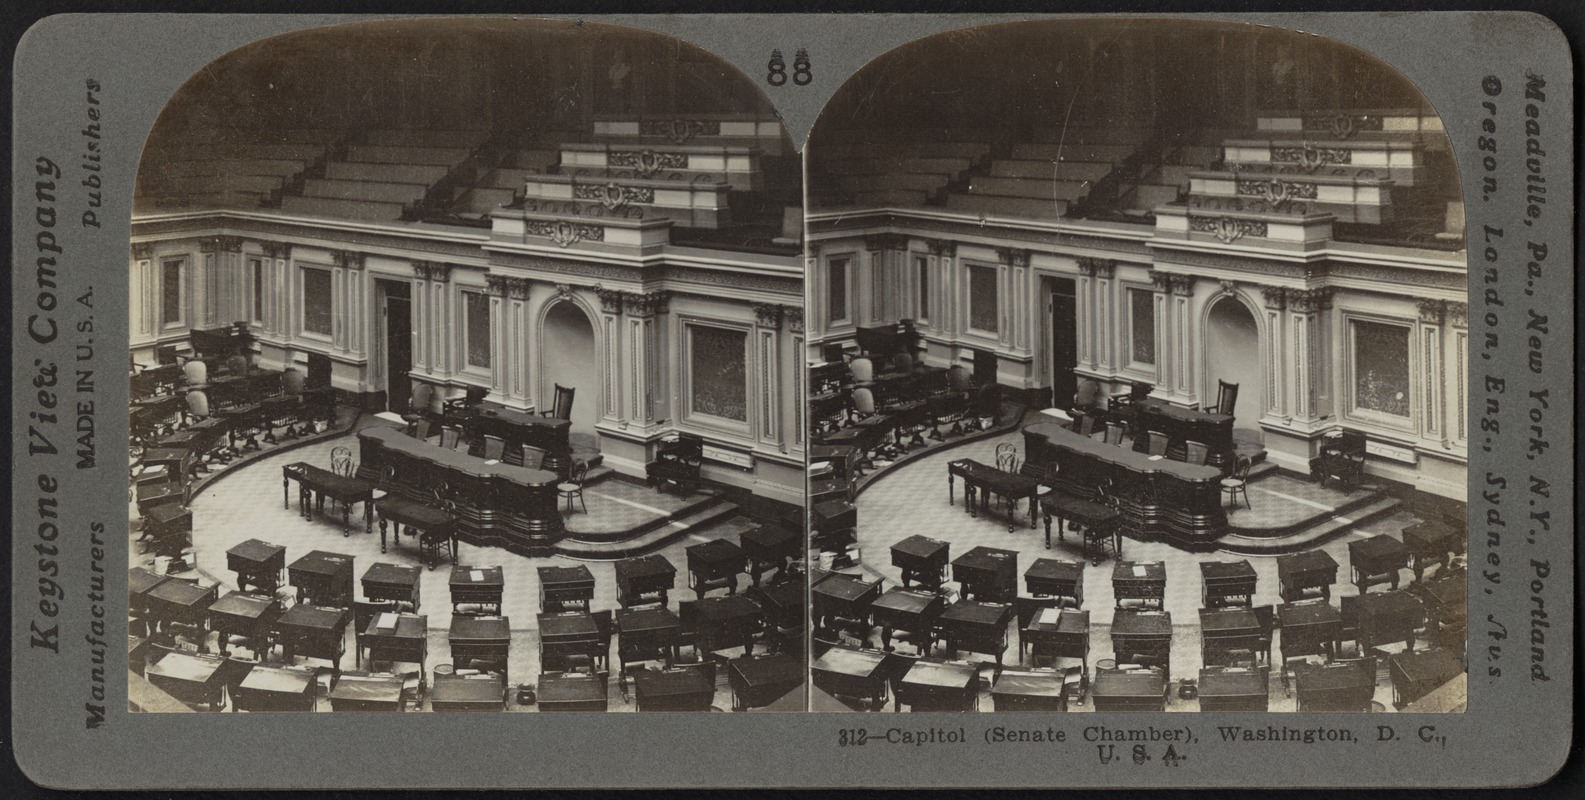 Capitol, Senate Chamber, Washington, D.C.